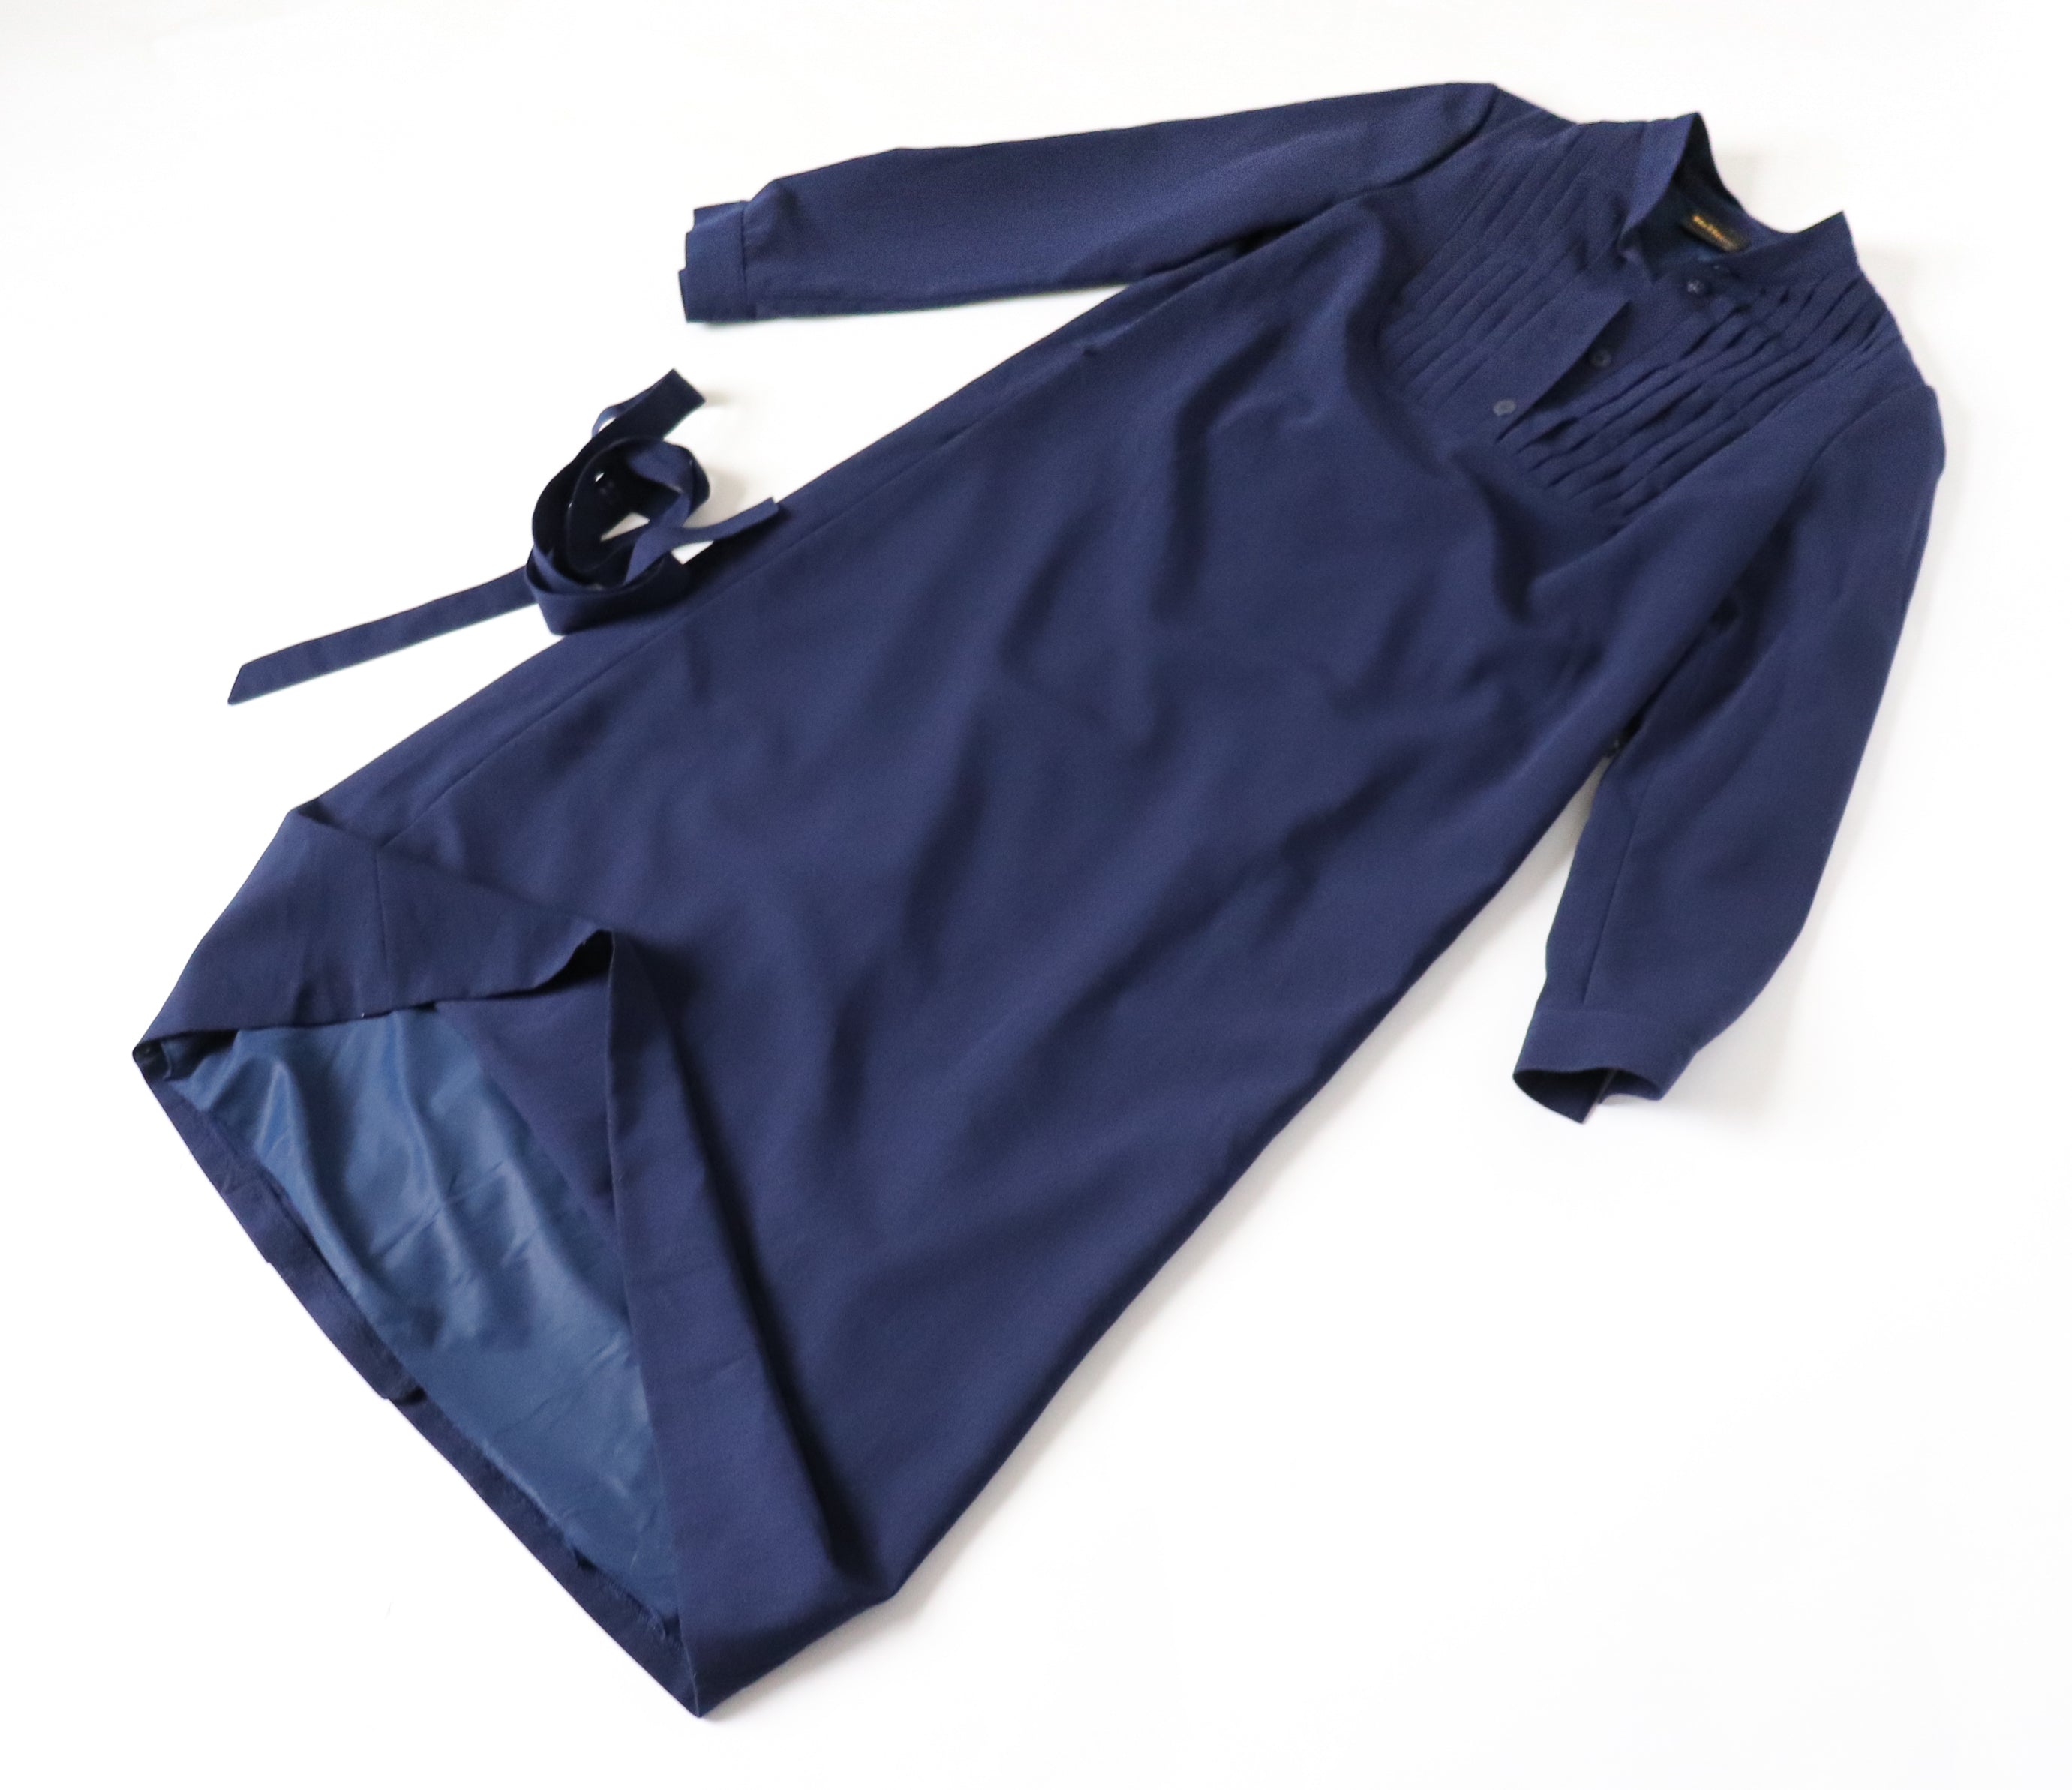 Shirt Dress - Vintage Belted Dress - Long Sleeve - Blue - WIBOR - M / UK 12